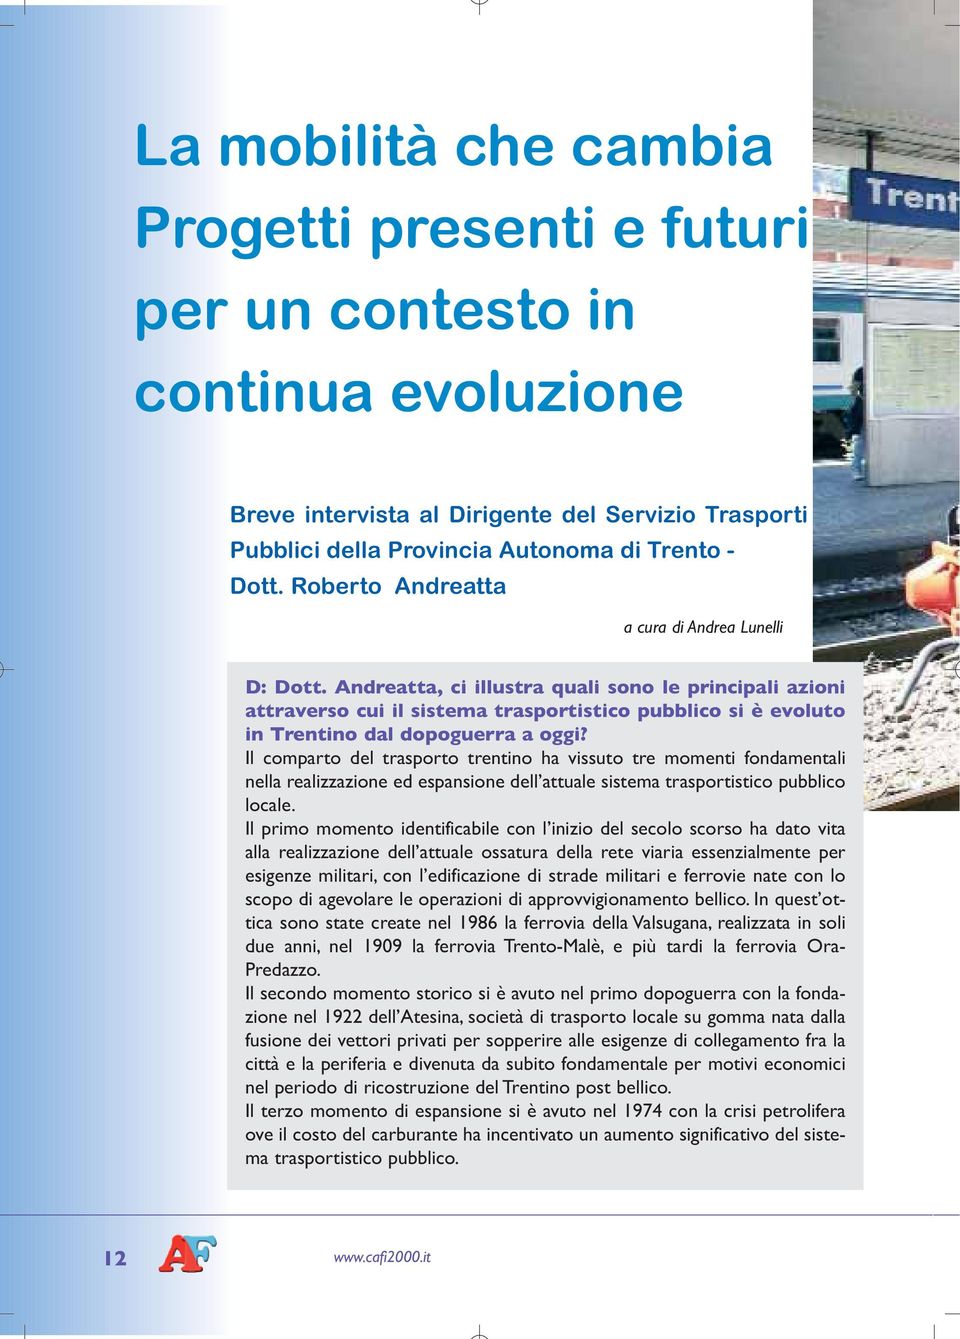 Andreatta, ci illustra quali sono le principali azioni attraverso cui il sistema trasportistico pubblico si è evoluto in Trentino dal dopoguerra a oggi?